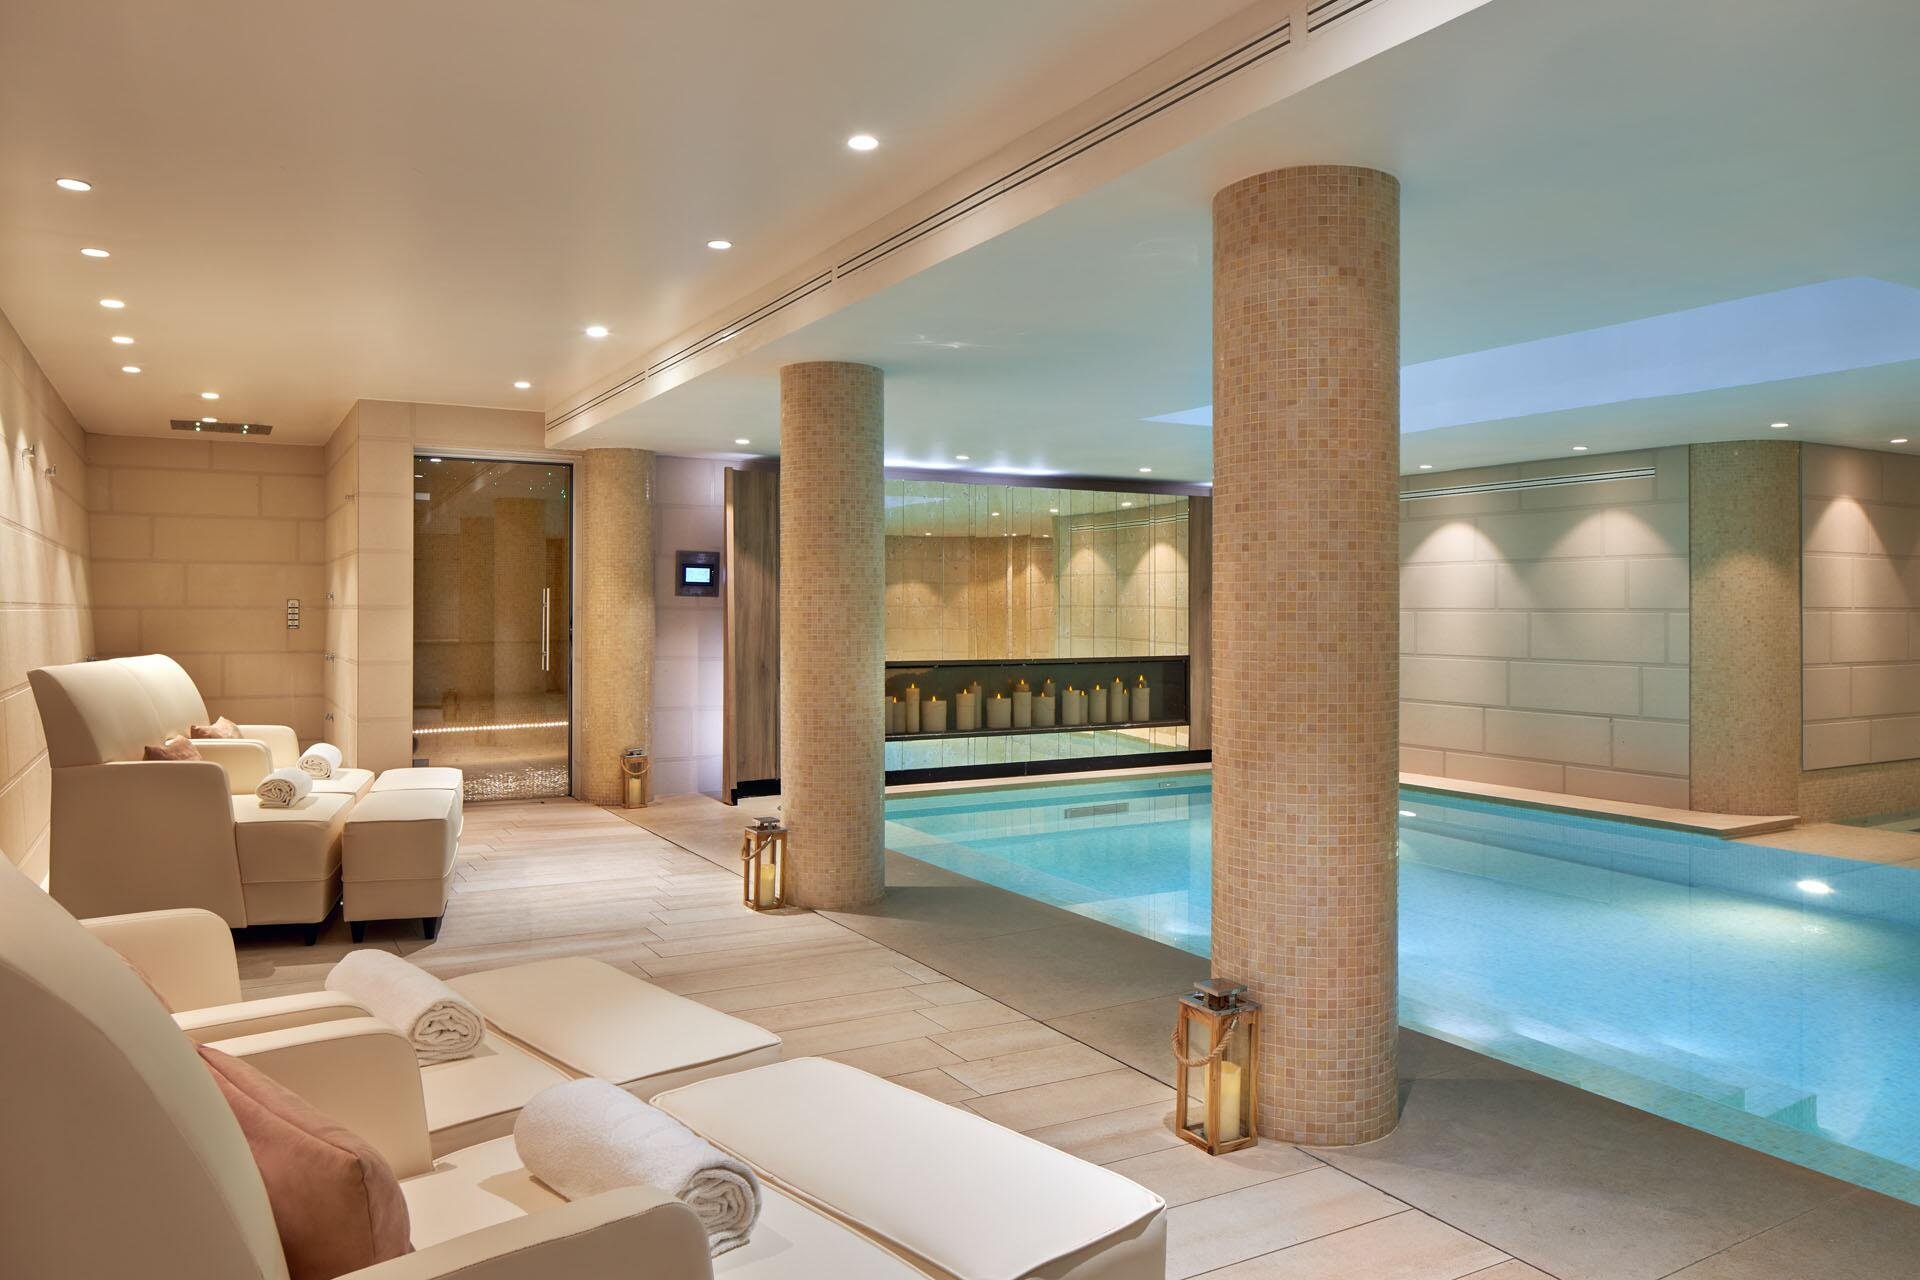 Maison Albar Hotels Le Pont-Neuf | Hôtel spa piscine Paris